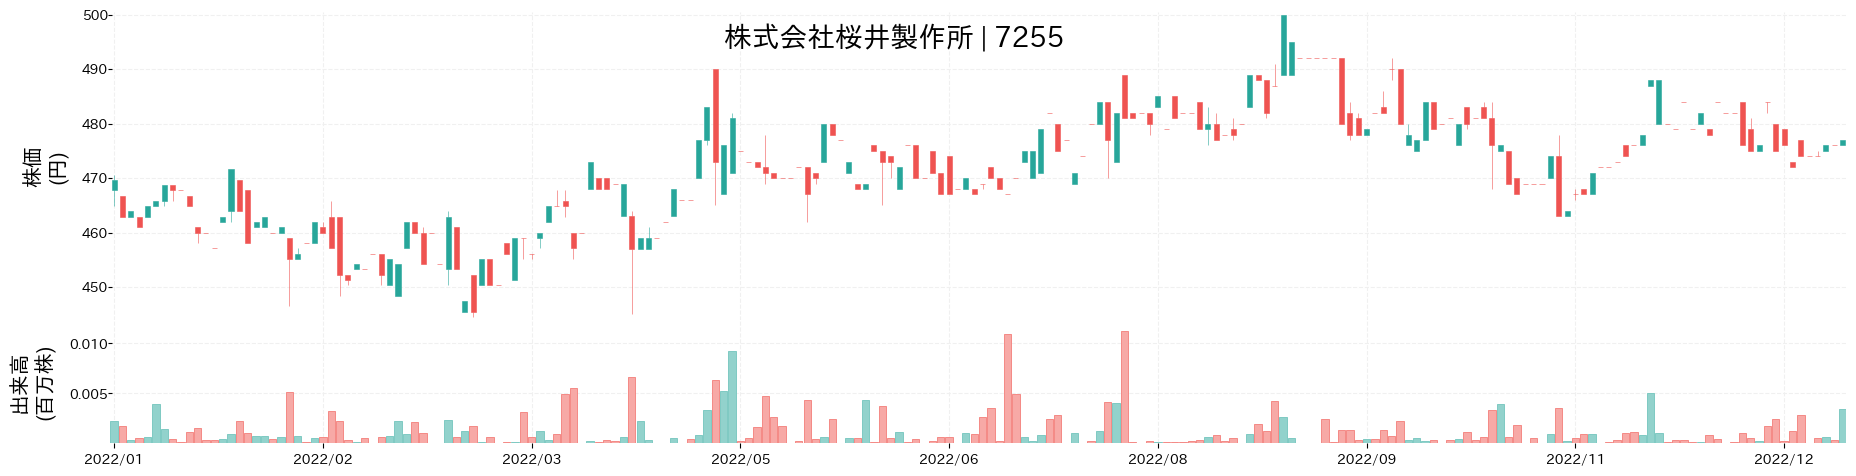 桜井製作所の株価推移(2022)